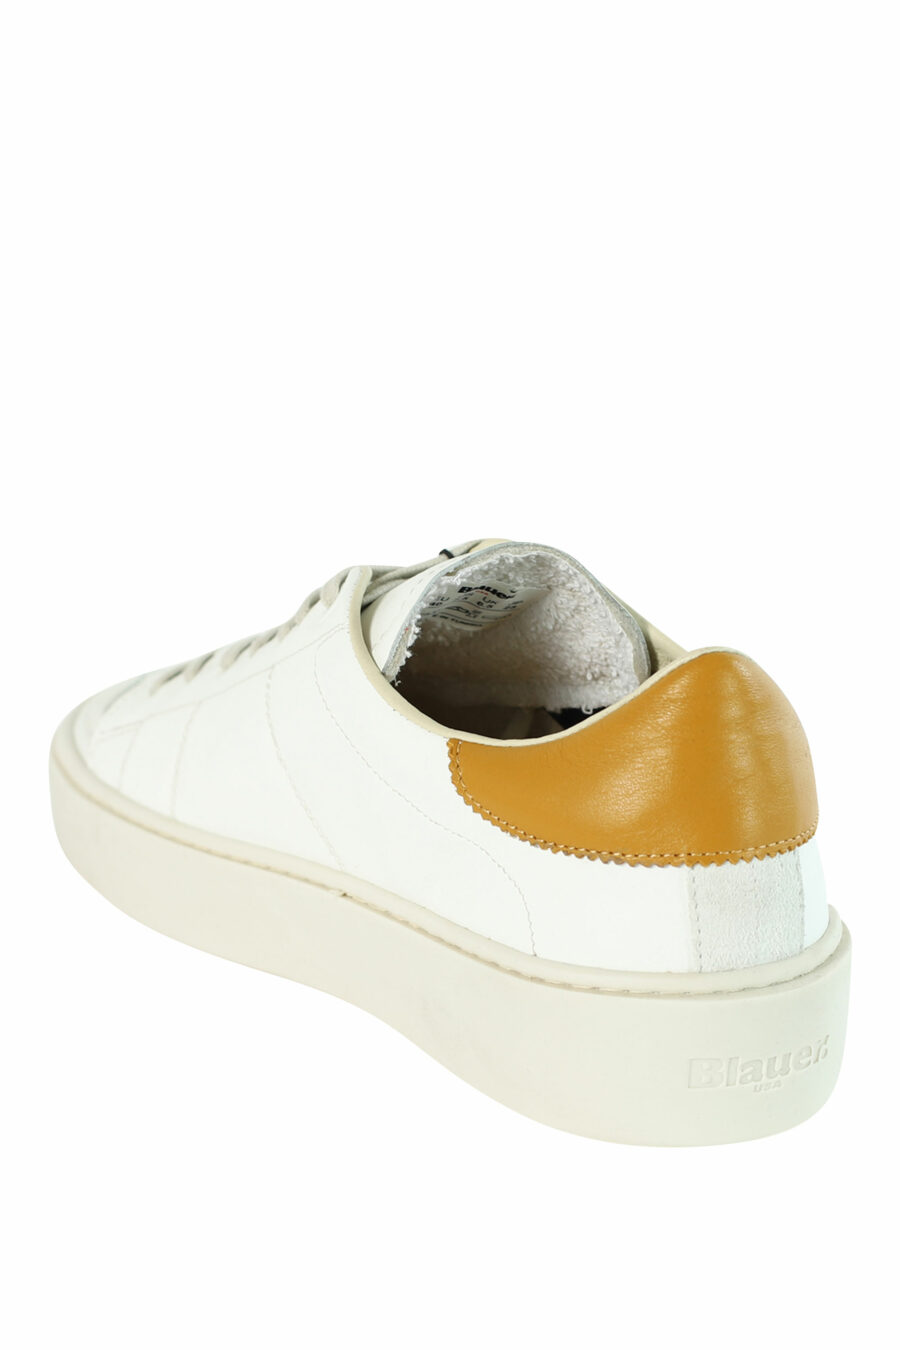 Zapatillas "STATEN" blancas con detalles amarillos - 8058156501072 4